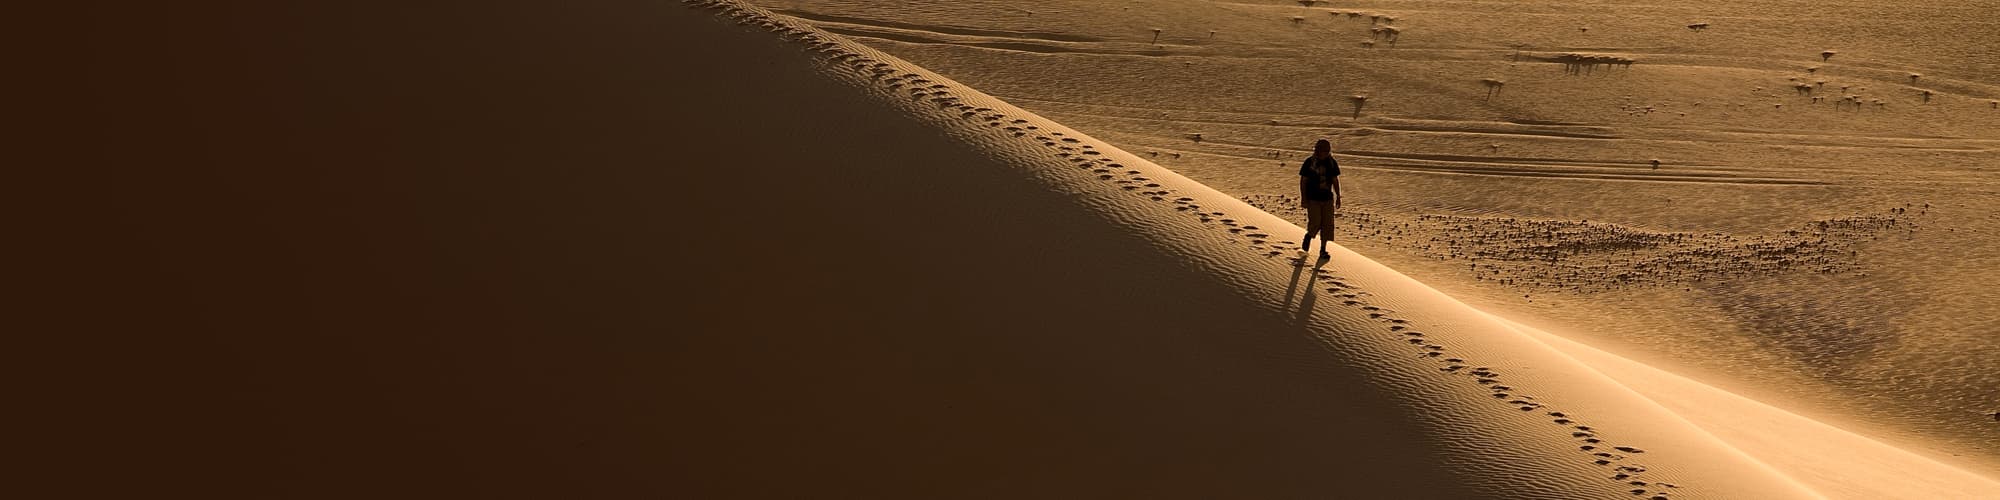 Voyage en Mauritanie : trek et randonnée © MOIRENC Camille / hemis.fr